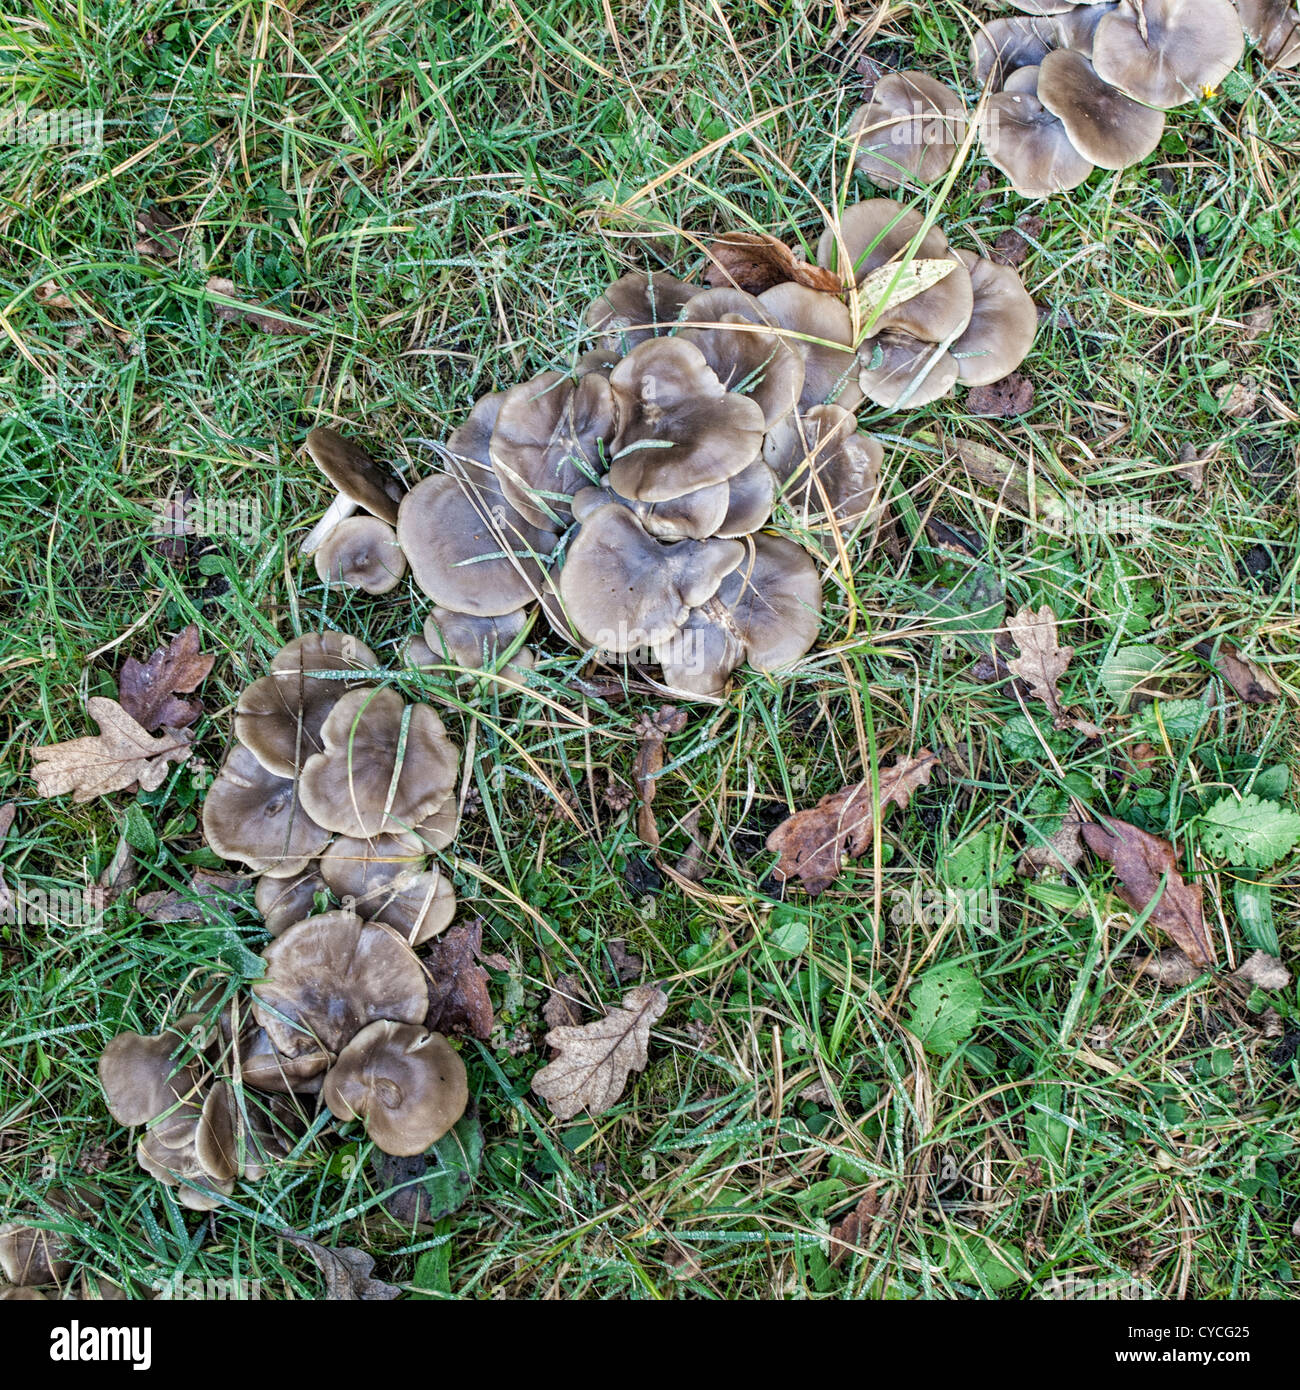 Eine Truppe von Pilzen - gemeinsame Ockham, Surrey Stockfoto